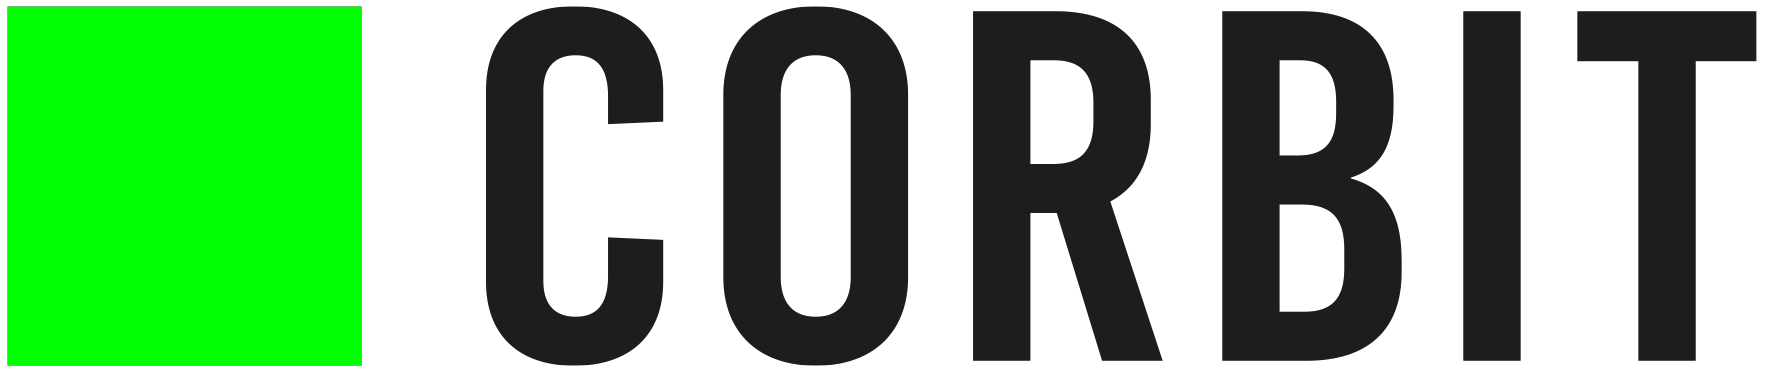 corbit-logo